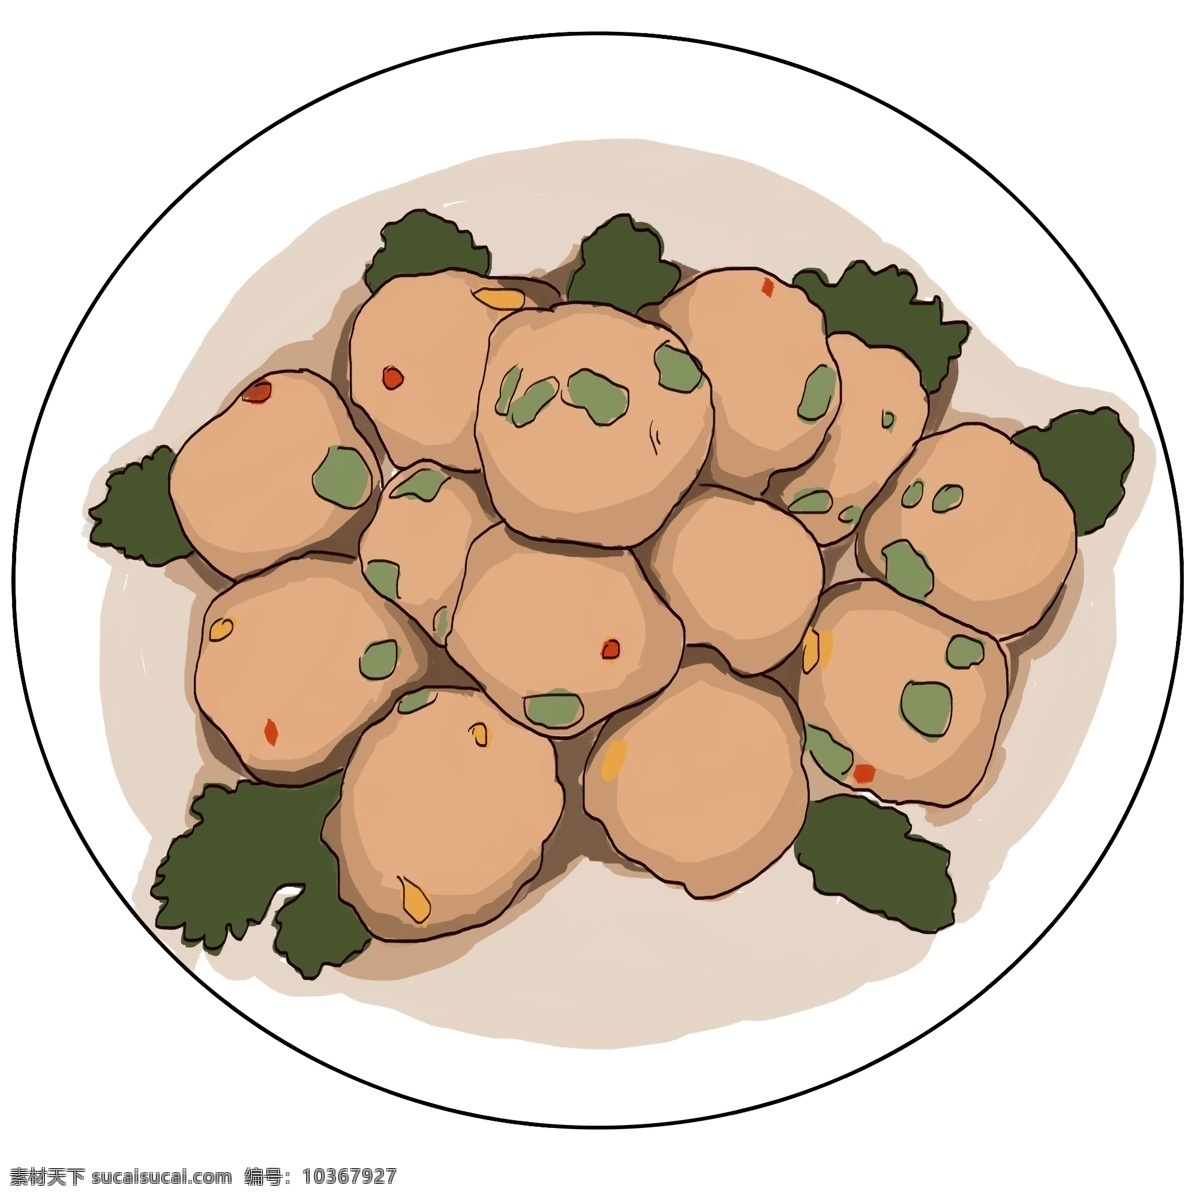 插画 类 火锅 配菜 图 植物 食物 绿色 肉色 白色盘子 肉丸子 带鱼丸子 火锅配菜 荤类 用于 餐厅 菜单 菜品 宣传